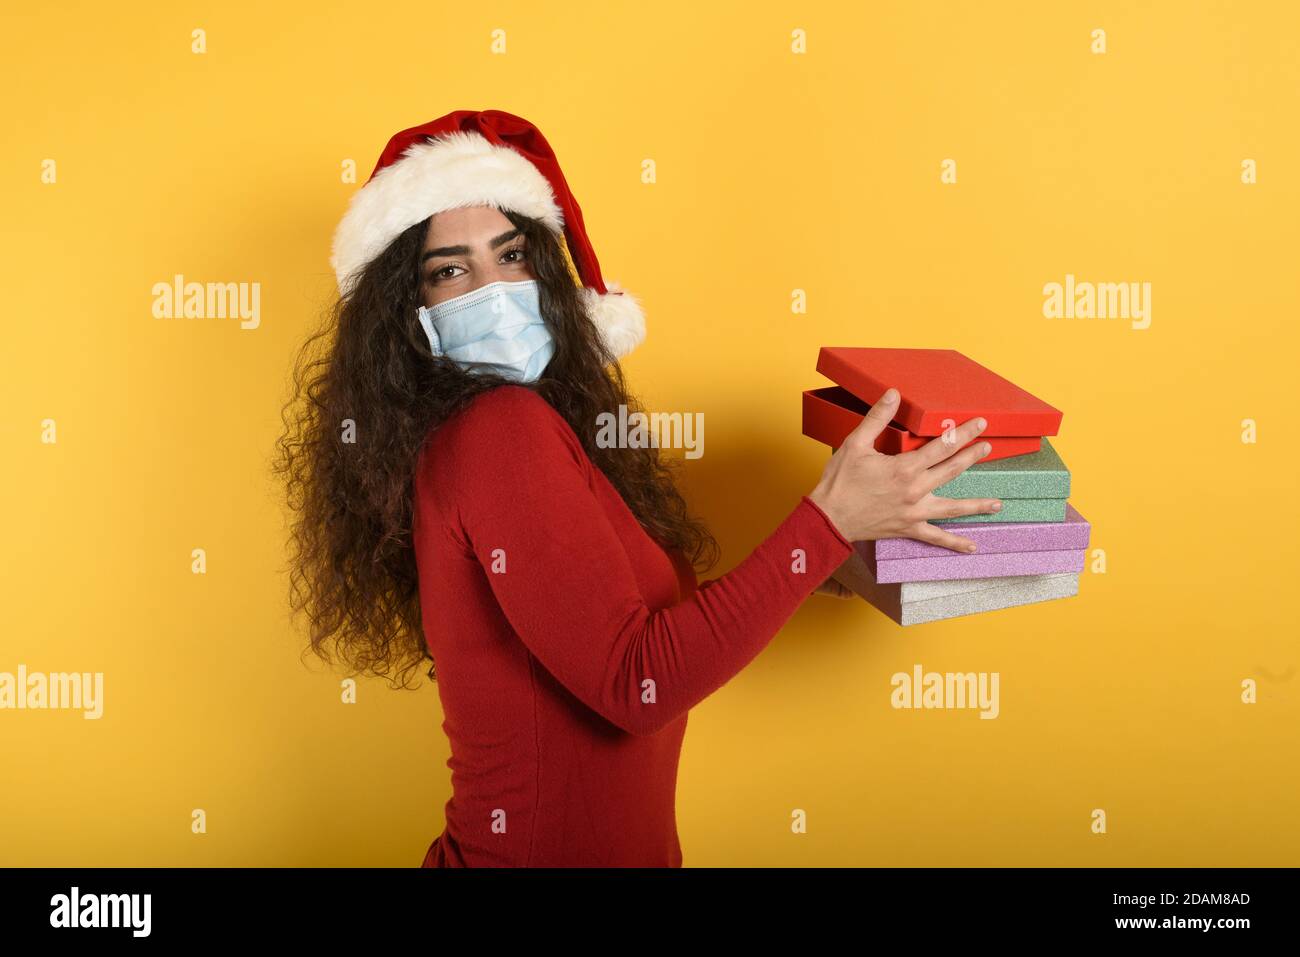 Glückliches Mädchen mit Gesichtsmaske erhält Weihnachtsgeschenke. Gelber Hintergrund Stockfoto